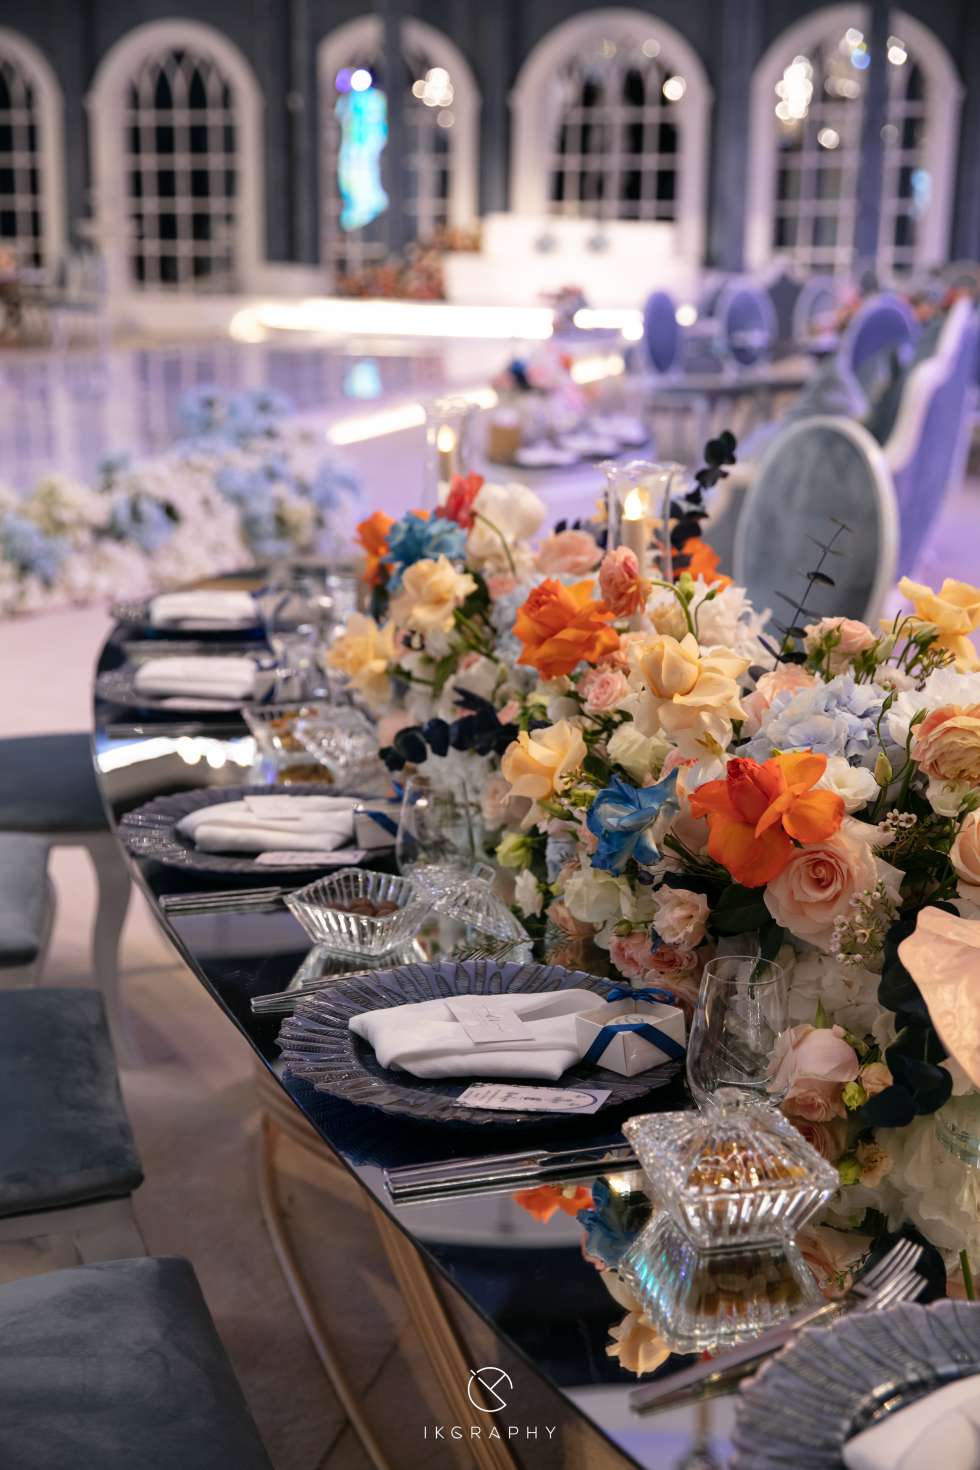 حفل زفاف بثيم القلعة الزرقاء في قطر